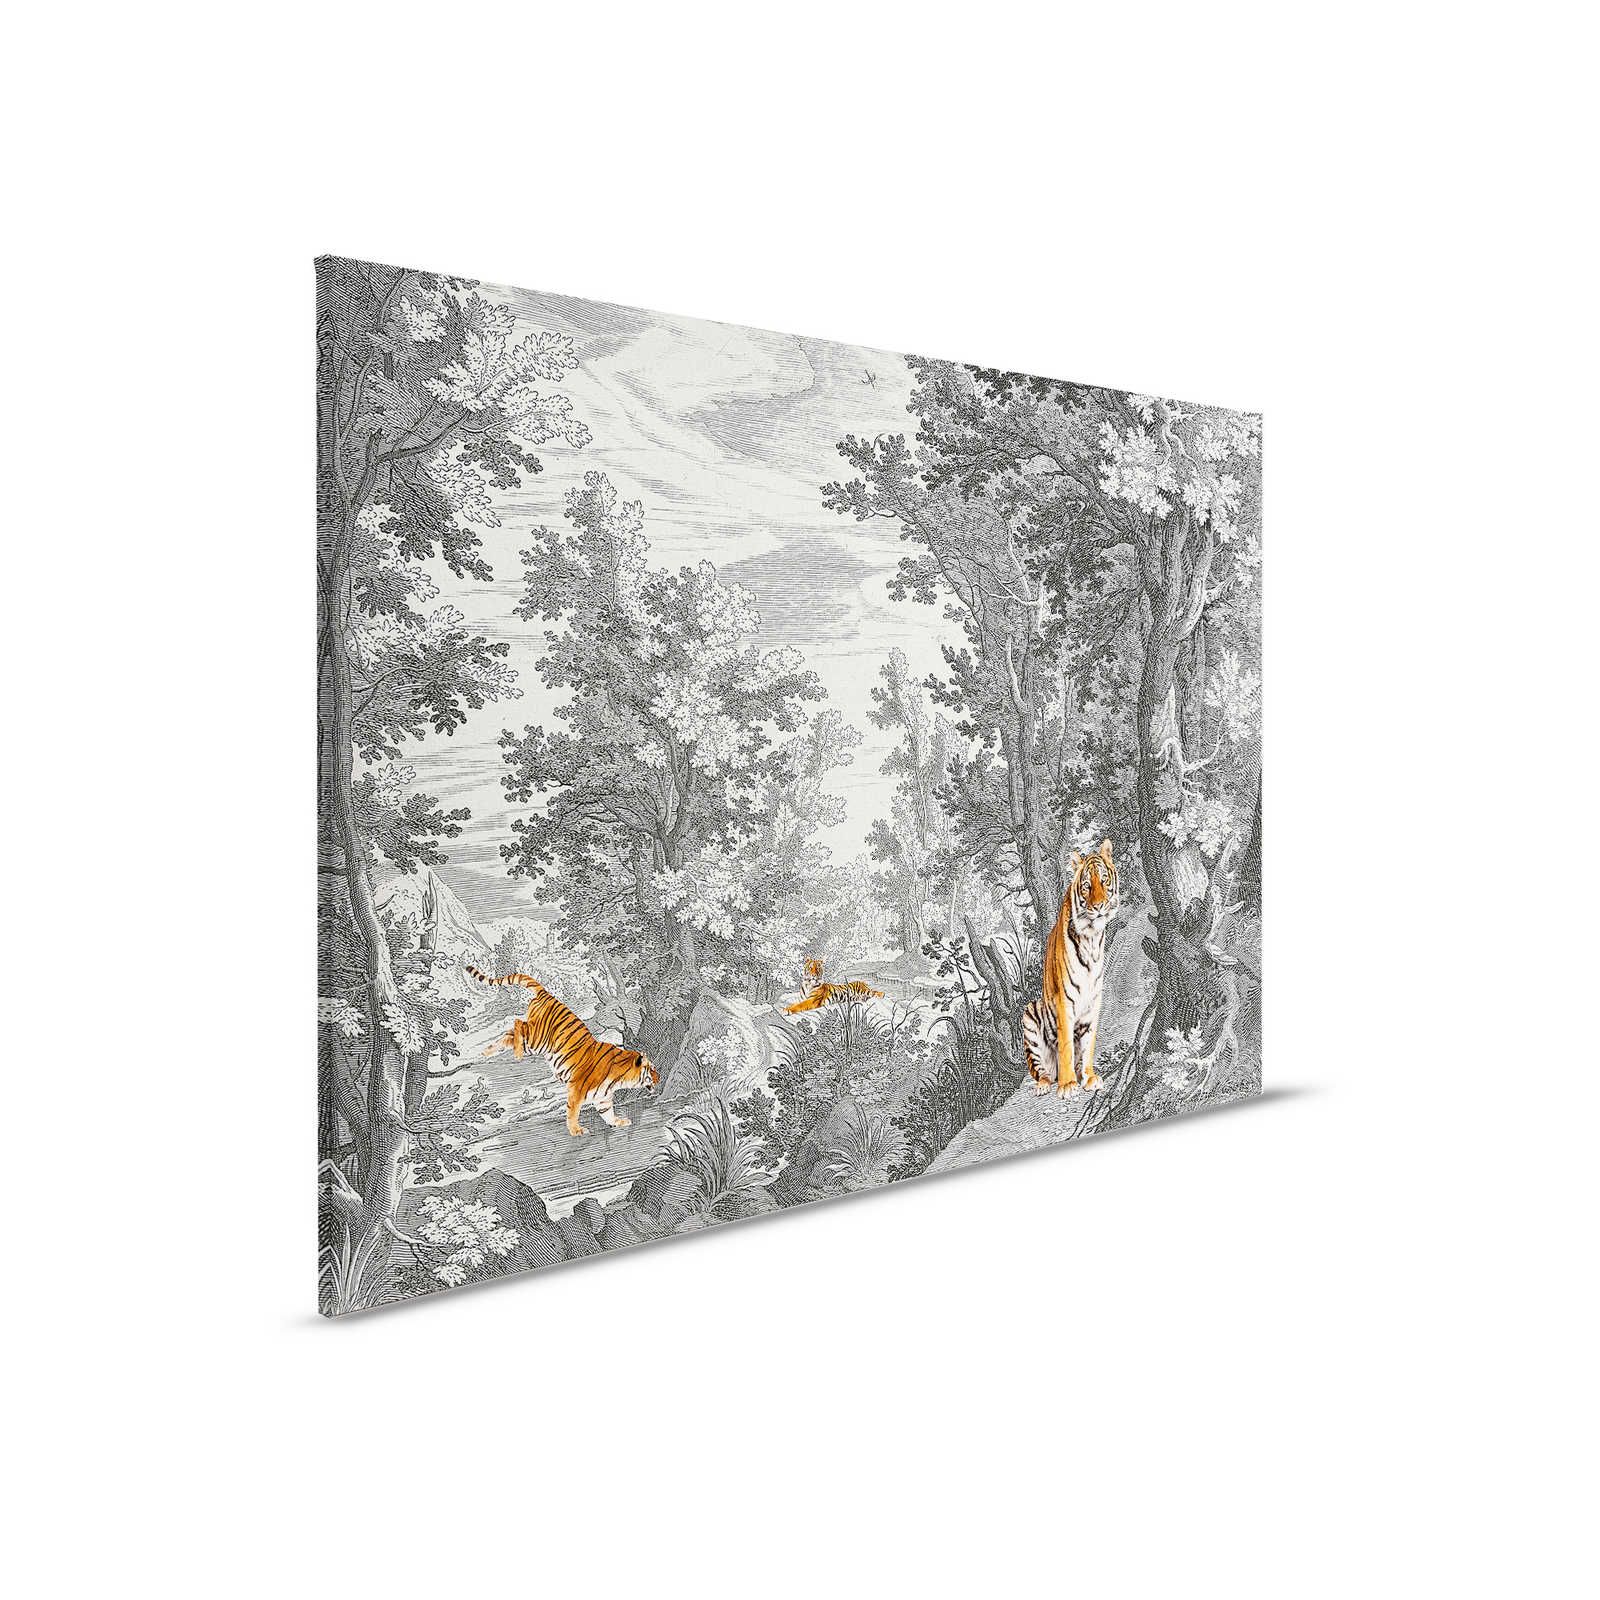 Fancy Forest 2 - Tableau toile paysage classique avec tigre - 0,90 m x 0,60 m
